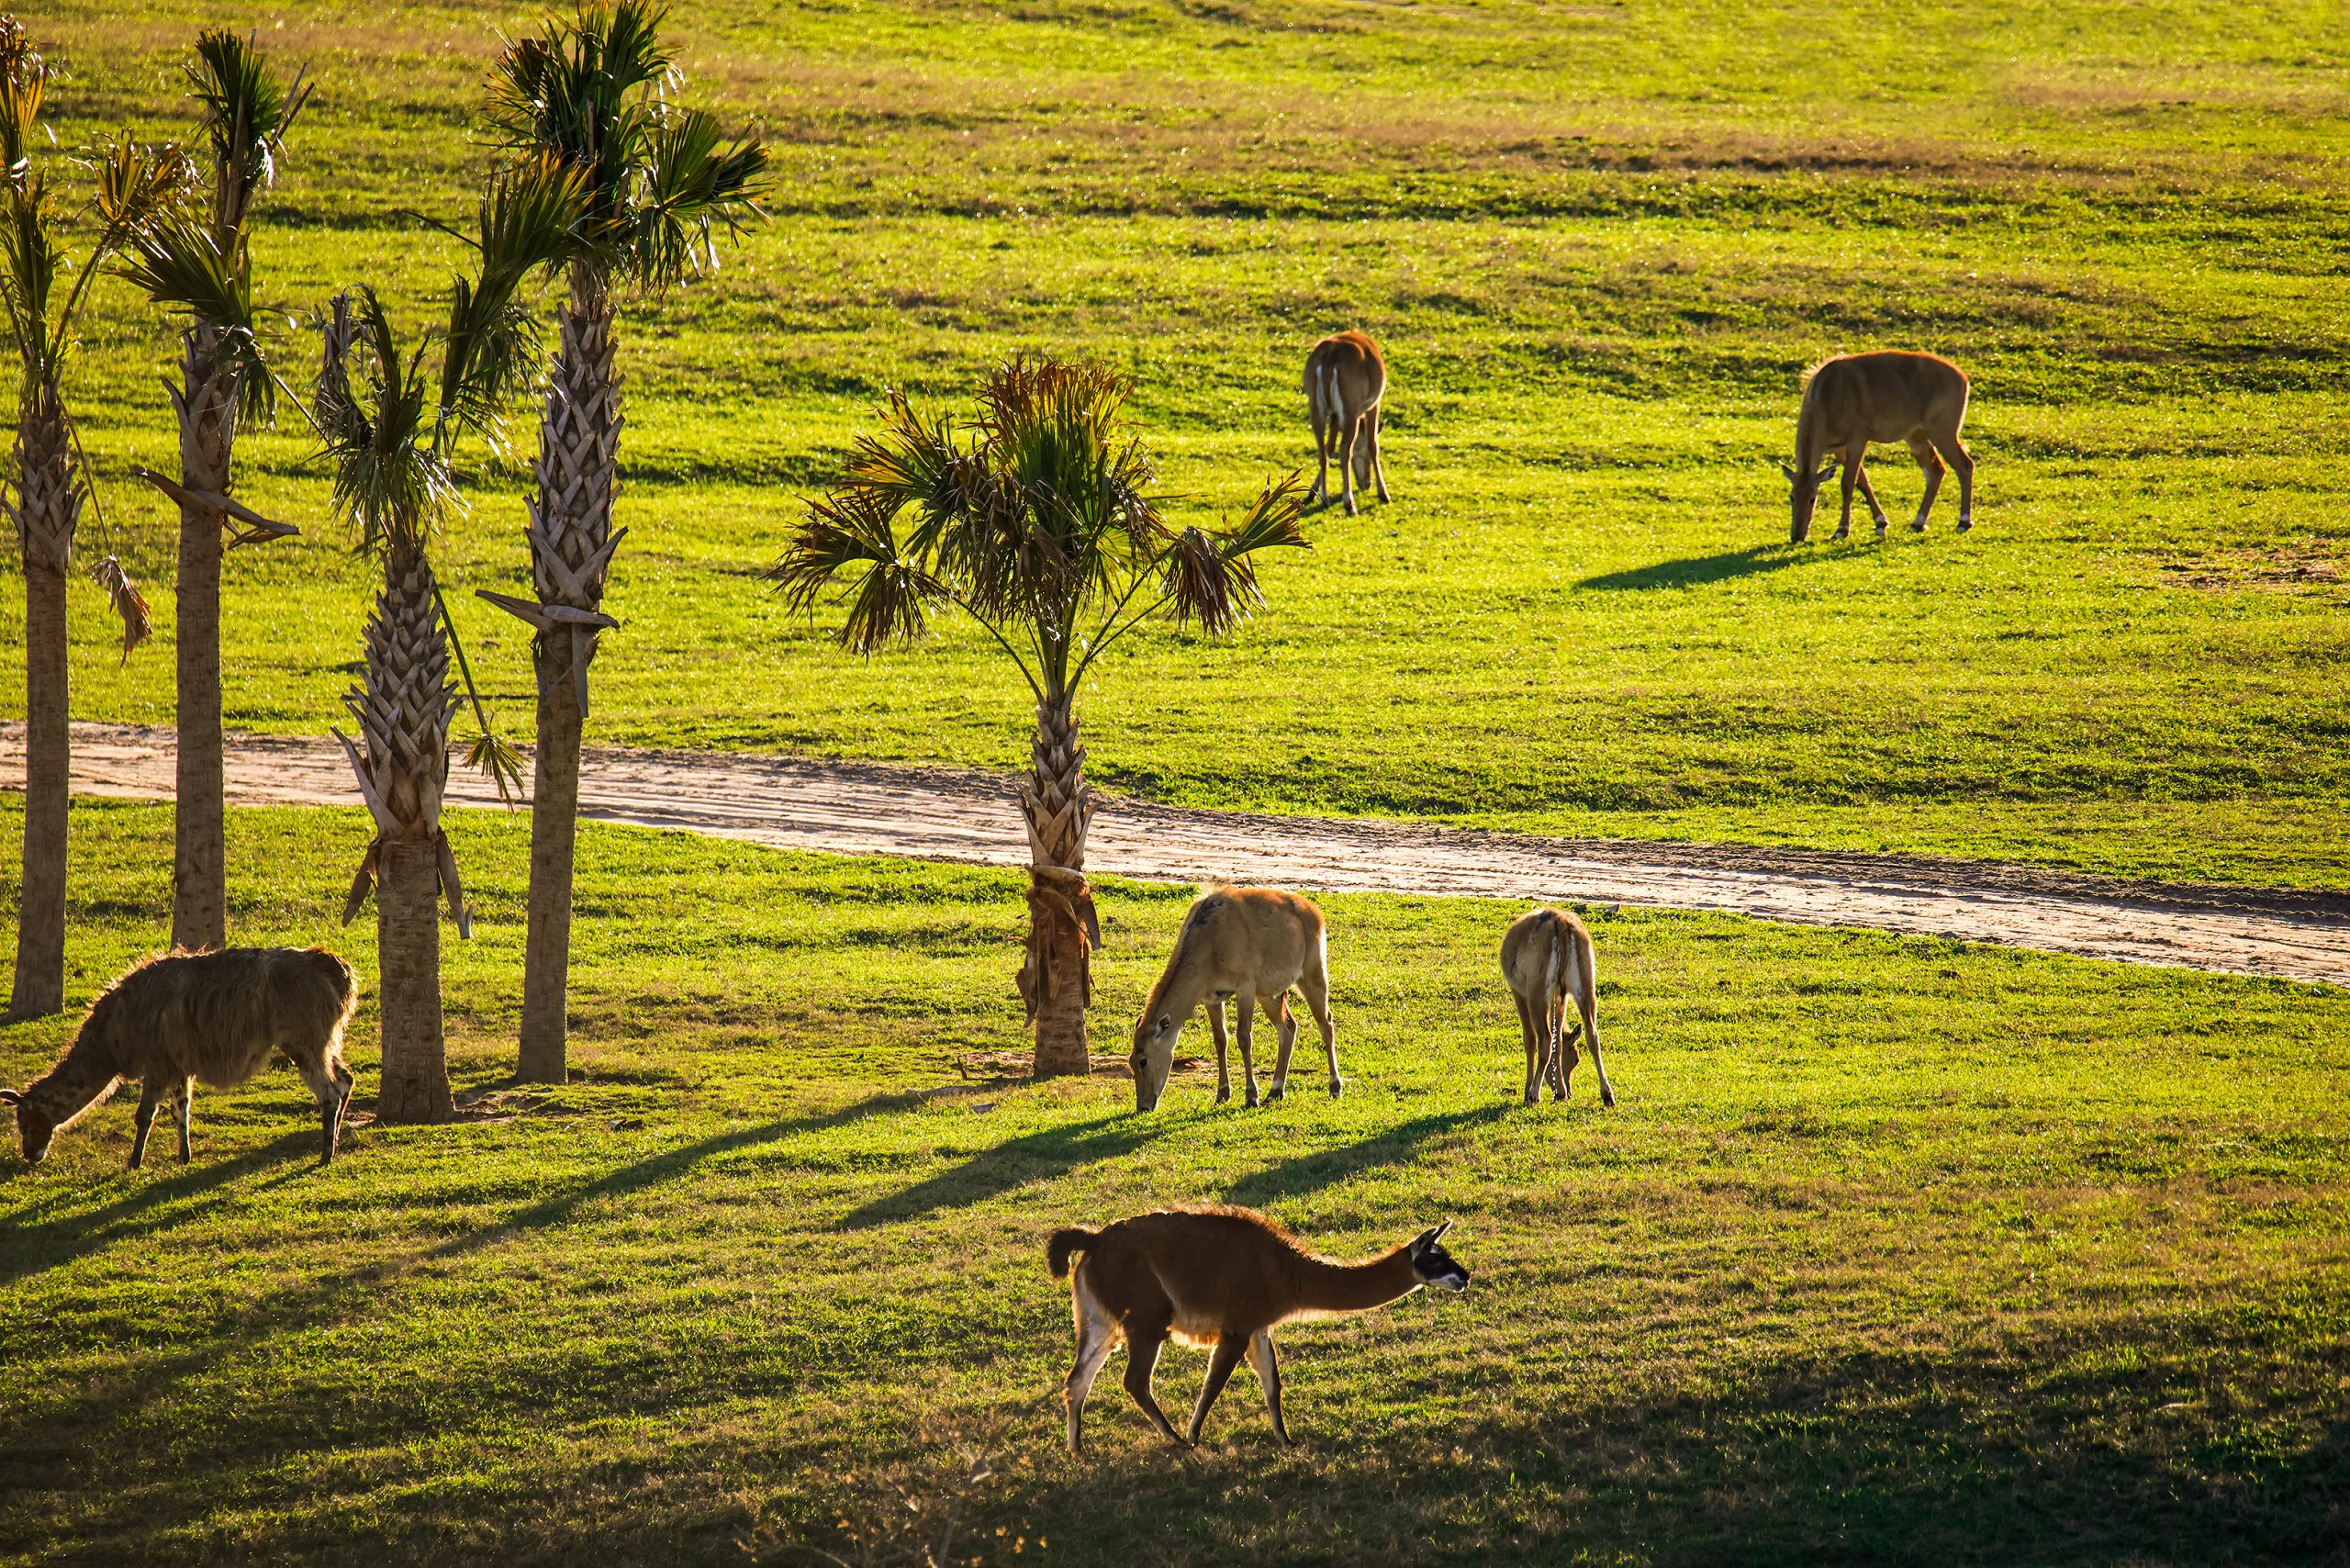 Llamas and nilgai antelope grazing. 